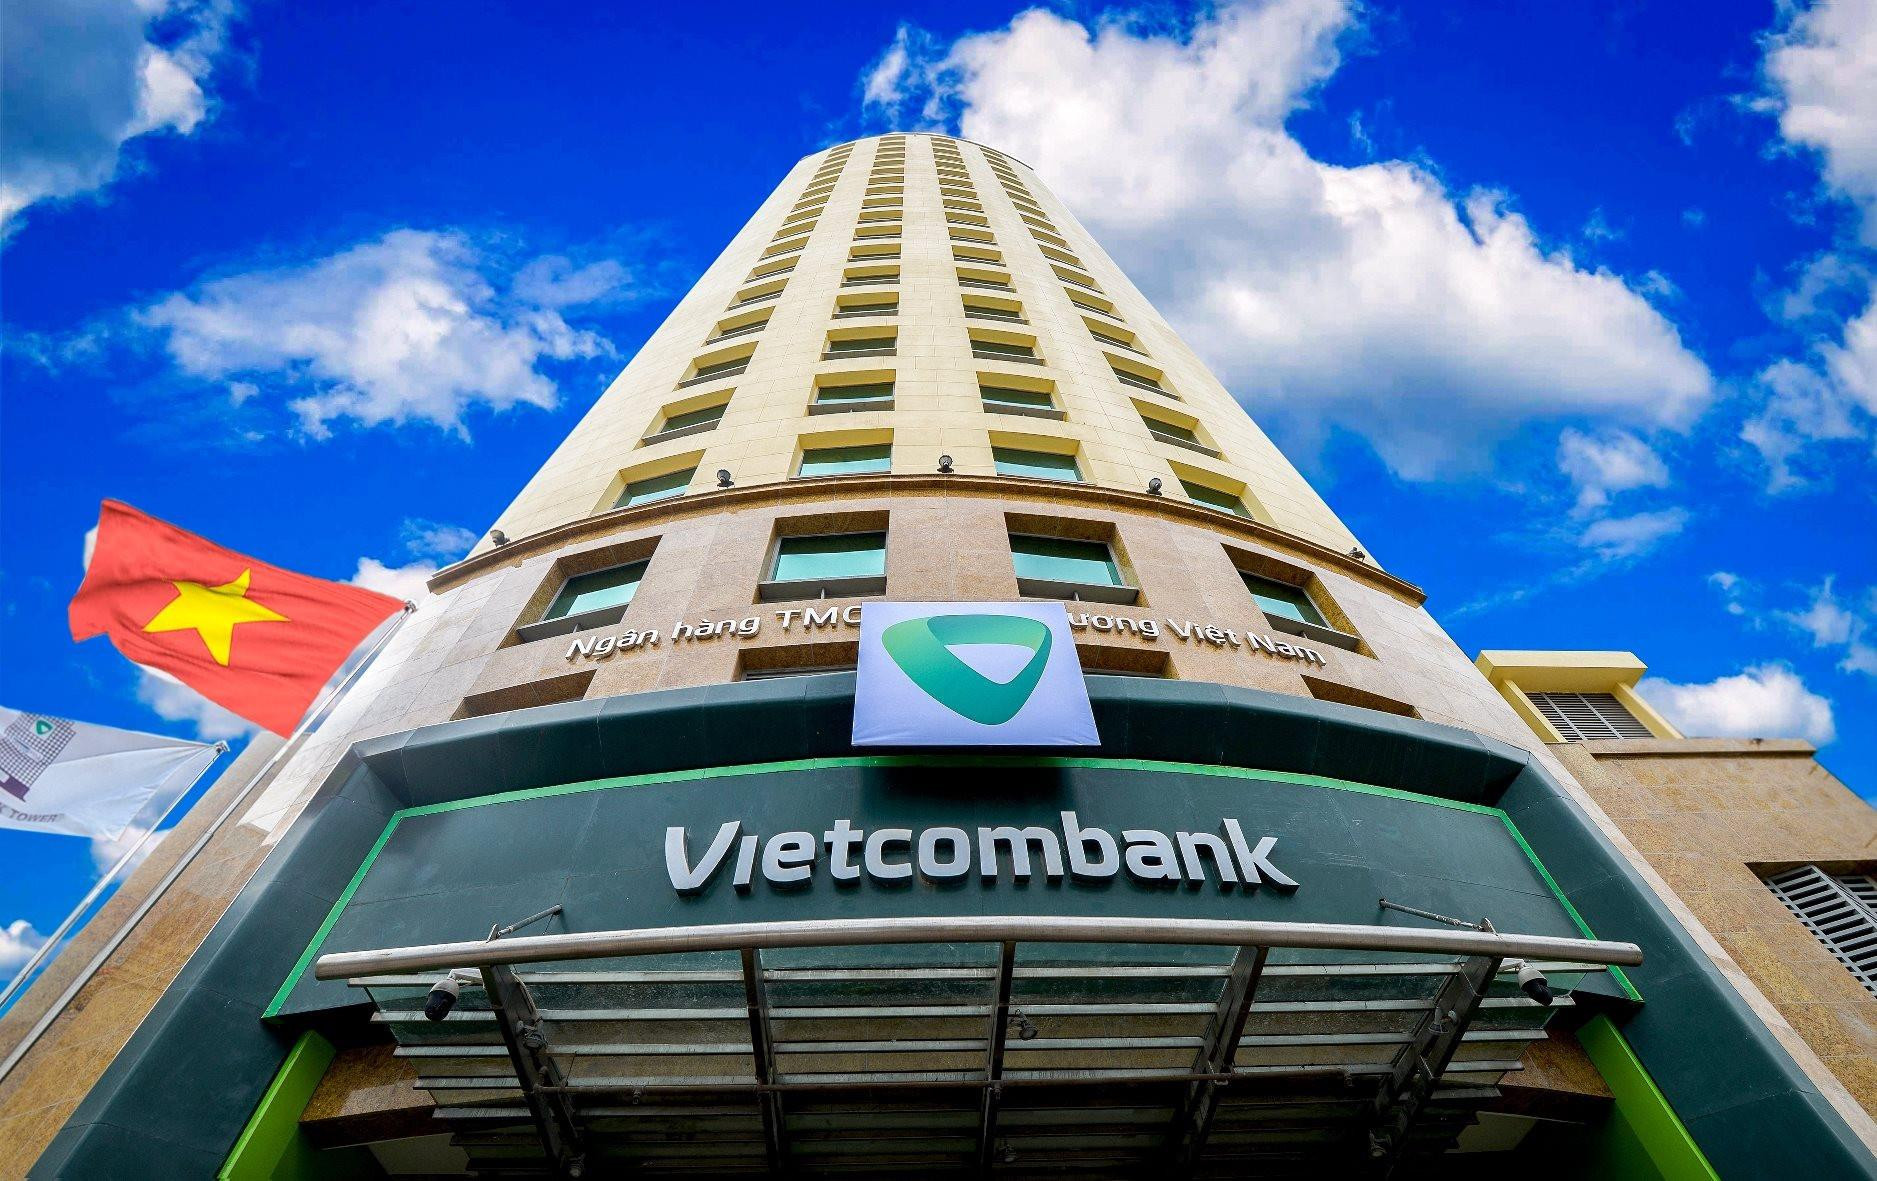 Vietcombank giảm tiếp lãi suất huy động từ 3/10, chính thức tạo đáy lịch sử - Ảnh 1.